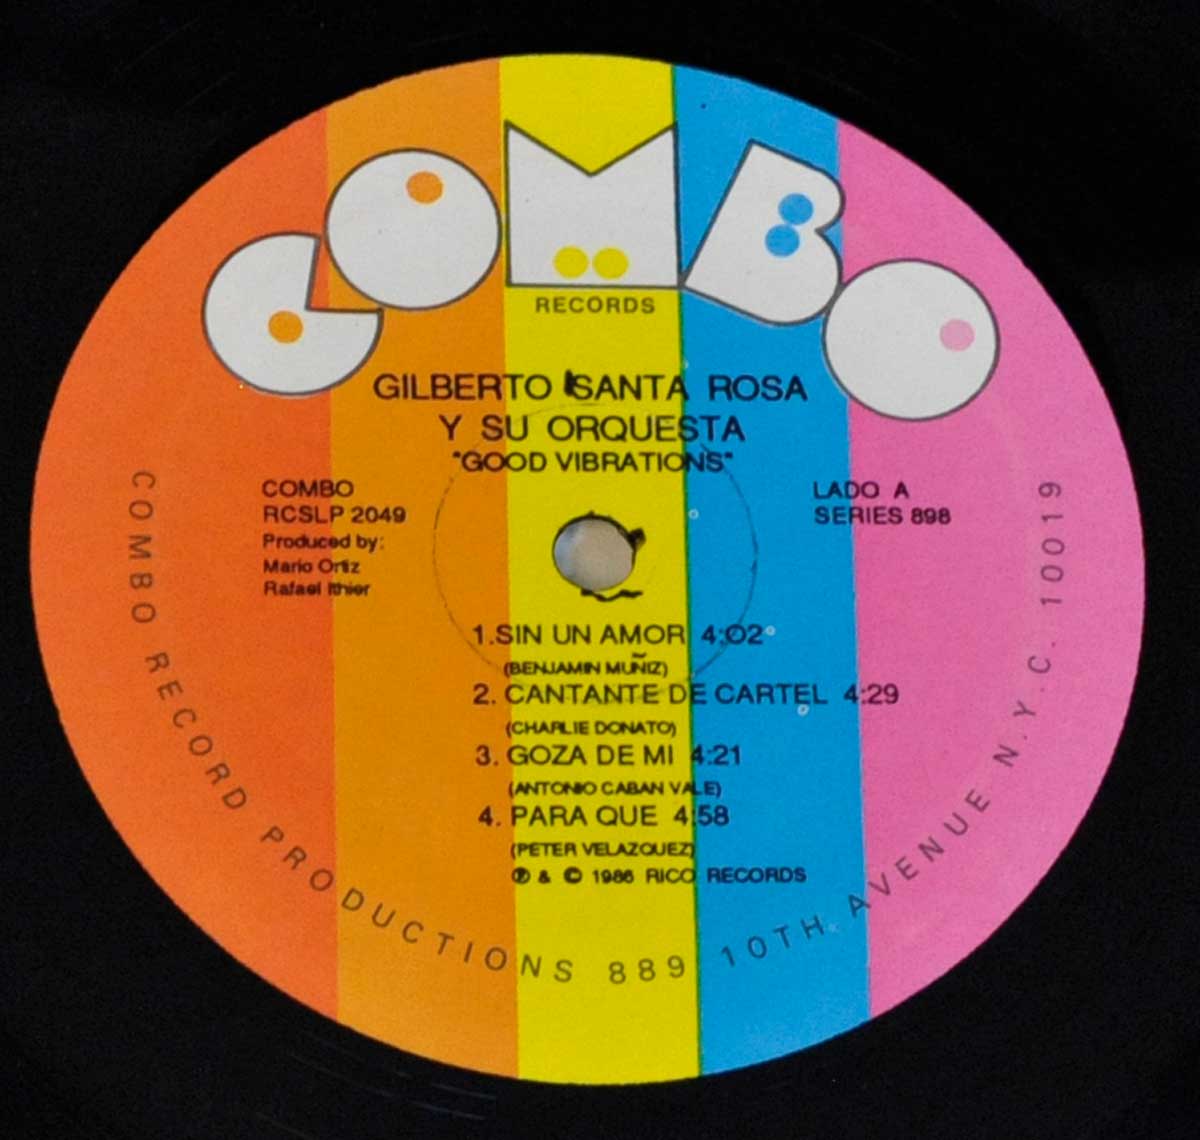 Close-up Photo of "GILBERTO SANTA ROSA - Good Vibrations" Record Label  